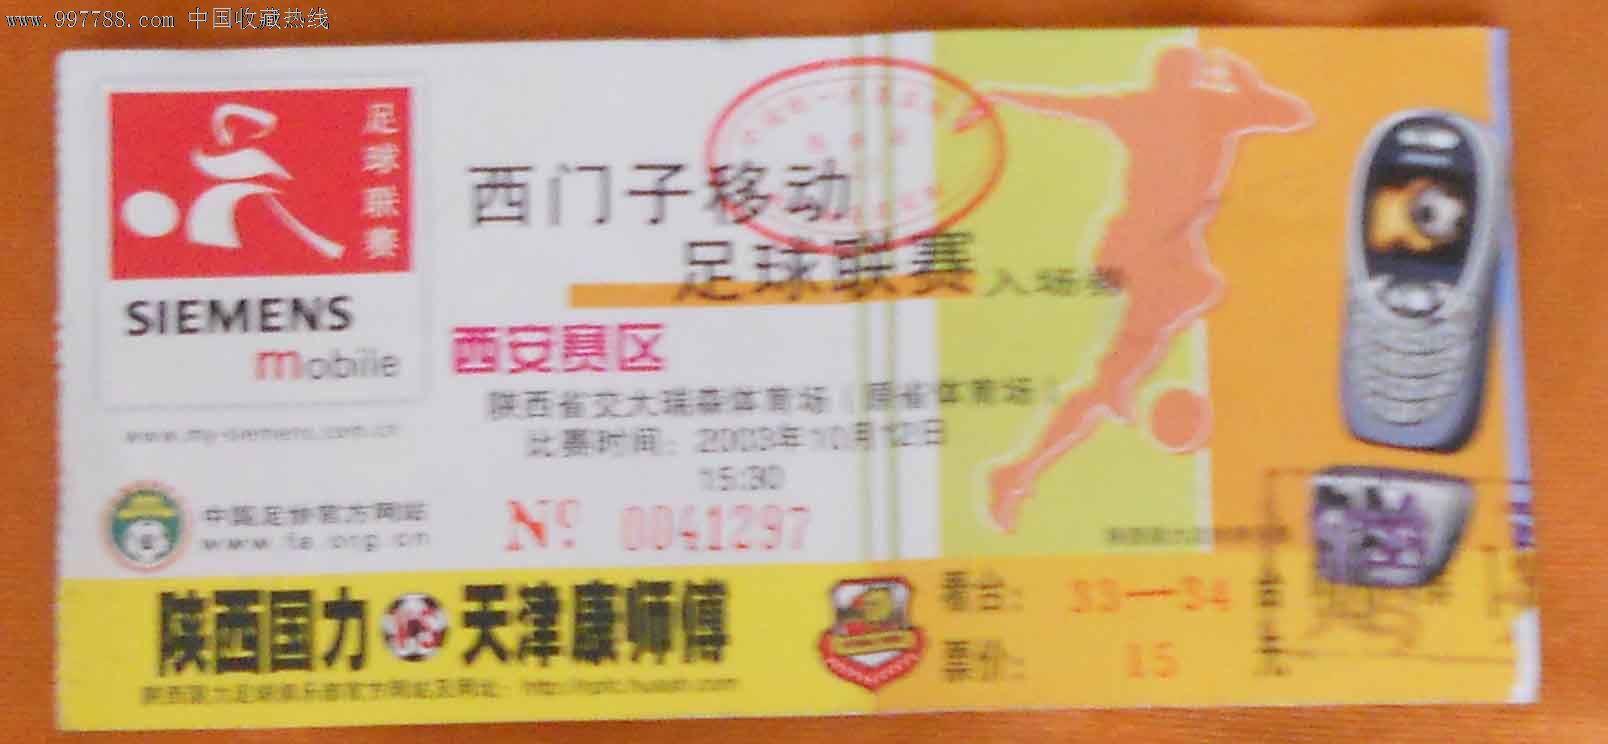 中国足球超级联赛03年A组(陕西国力--天津康师